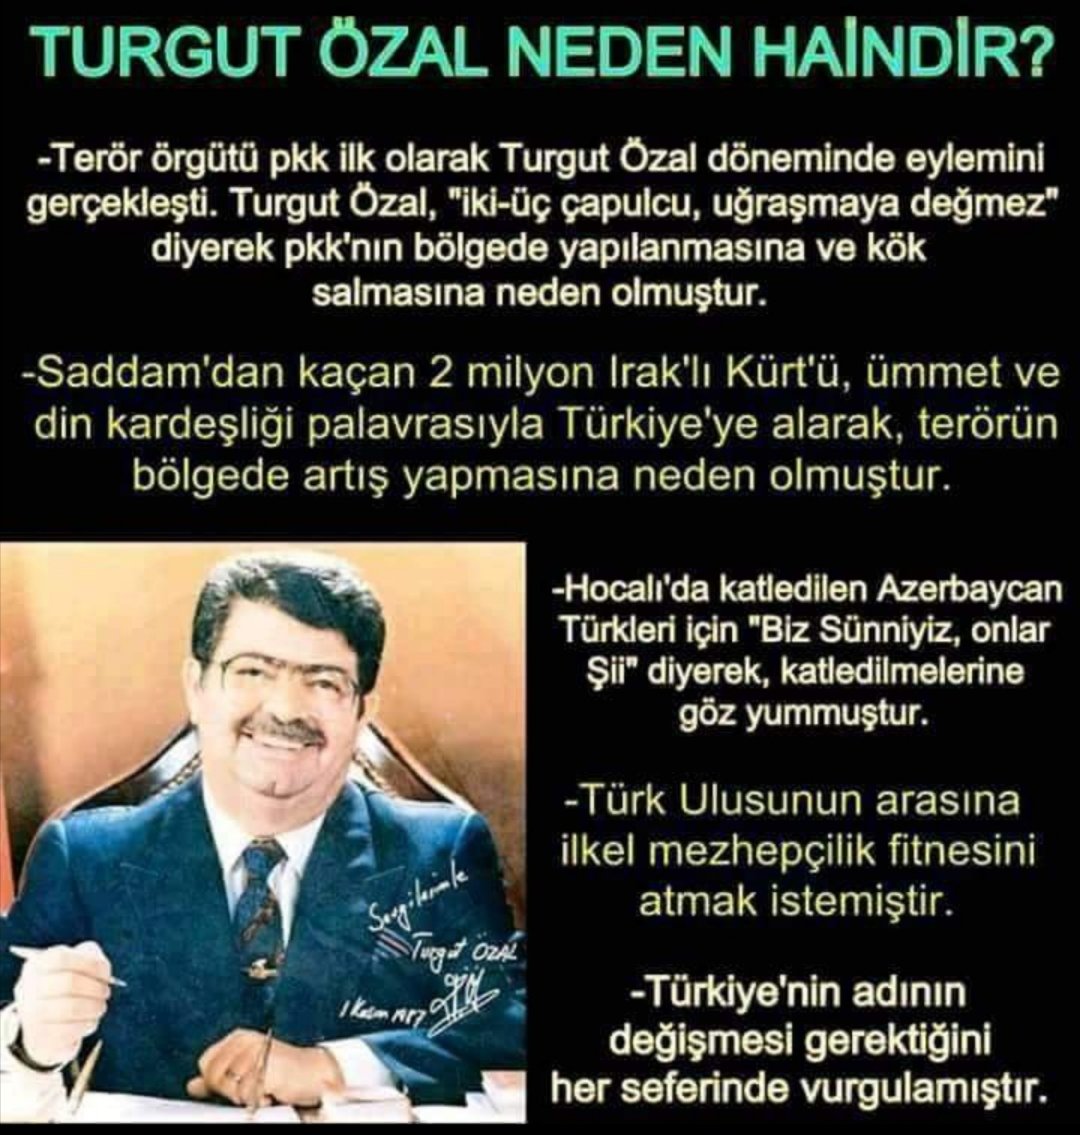 Bir zamanlar Turgut Özal'ın #ölmüş haberini aldığımda ne çok sevinmiştim anlatamam. Ülkenin bitip tükenmez hainleri yaşadıktan sonra bir hain gebermiş. Çok mu? Bizim için küçük bir mutluluktan başka birşey değil.